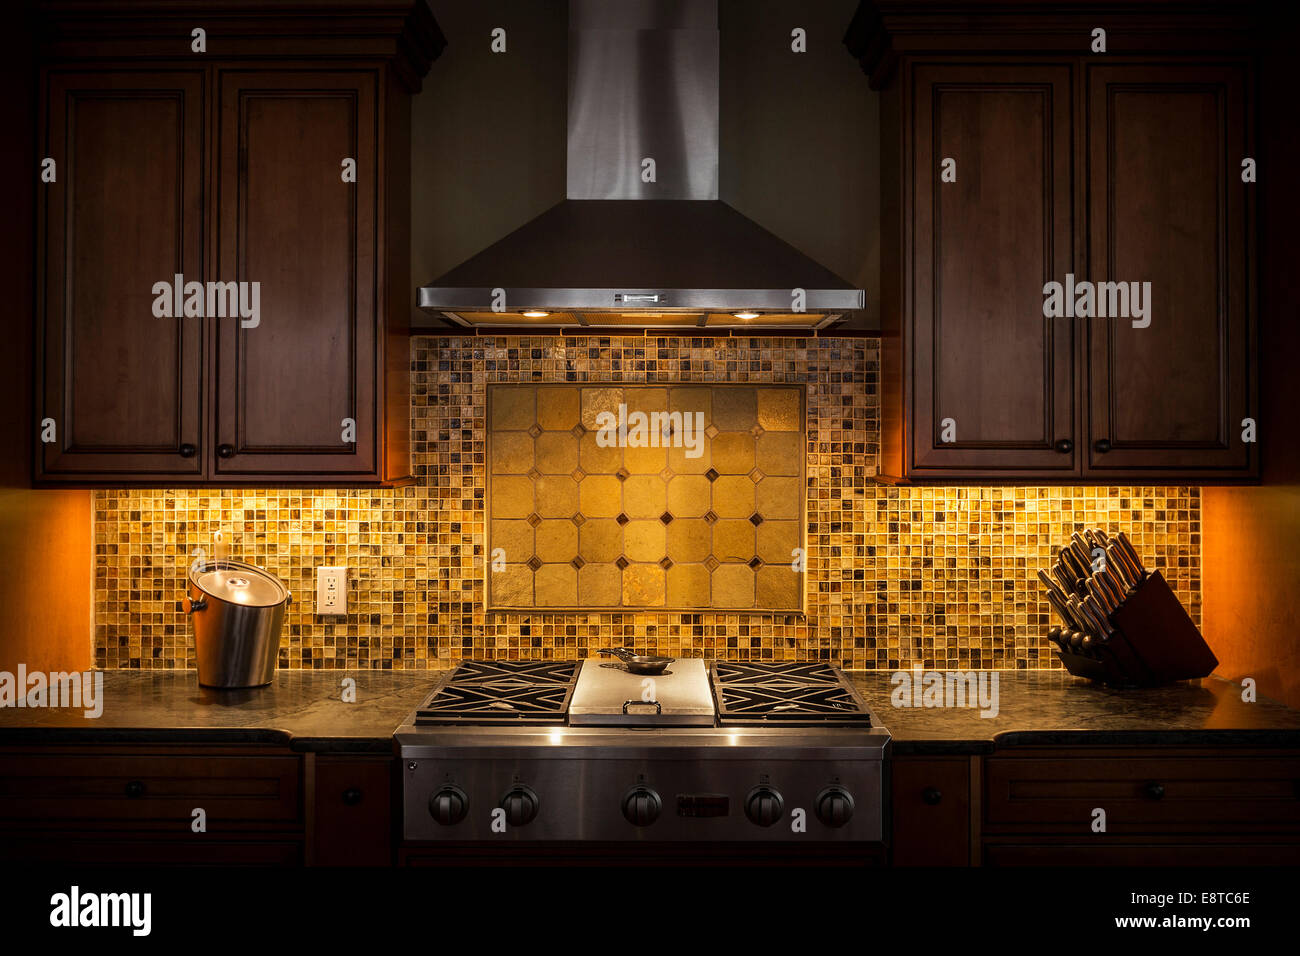 Retour tuile splash, hotte et cuisinière dans la cuisine sombre Photo Stock  - Alamy